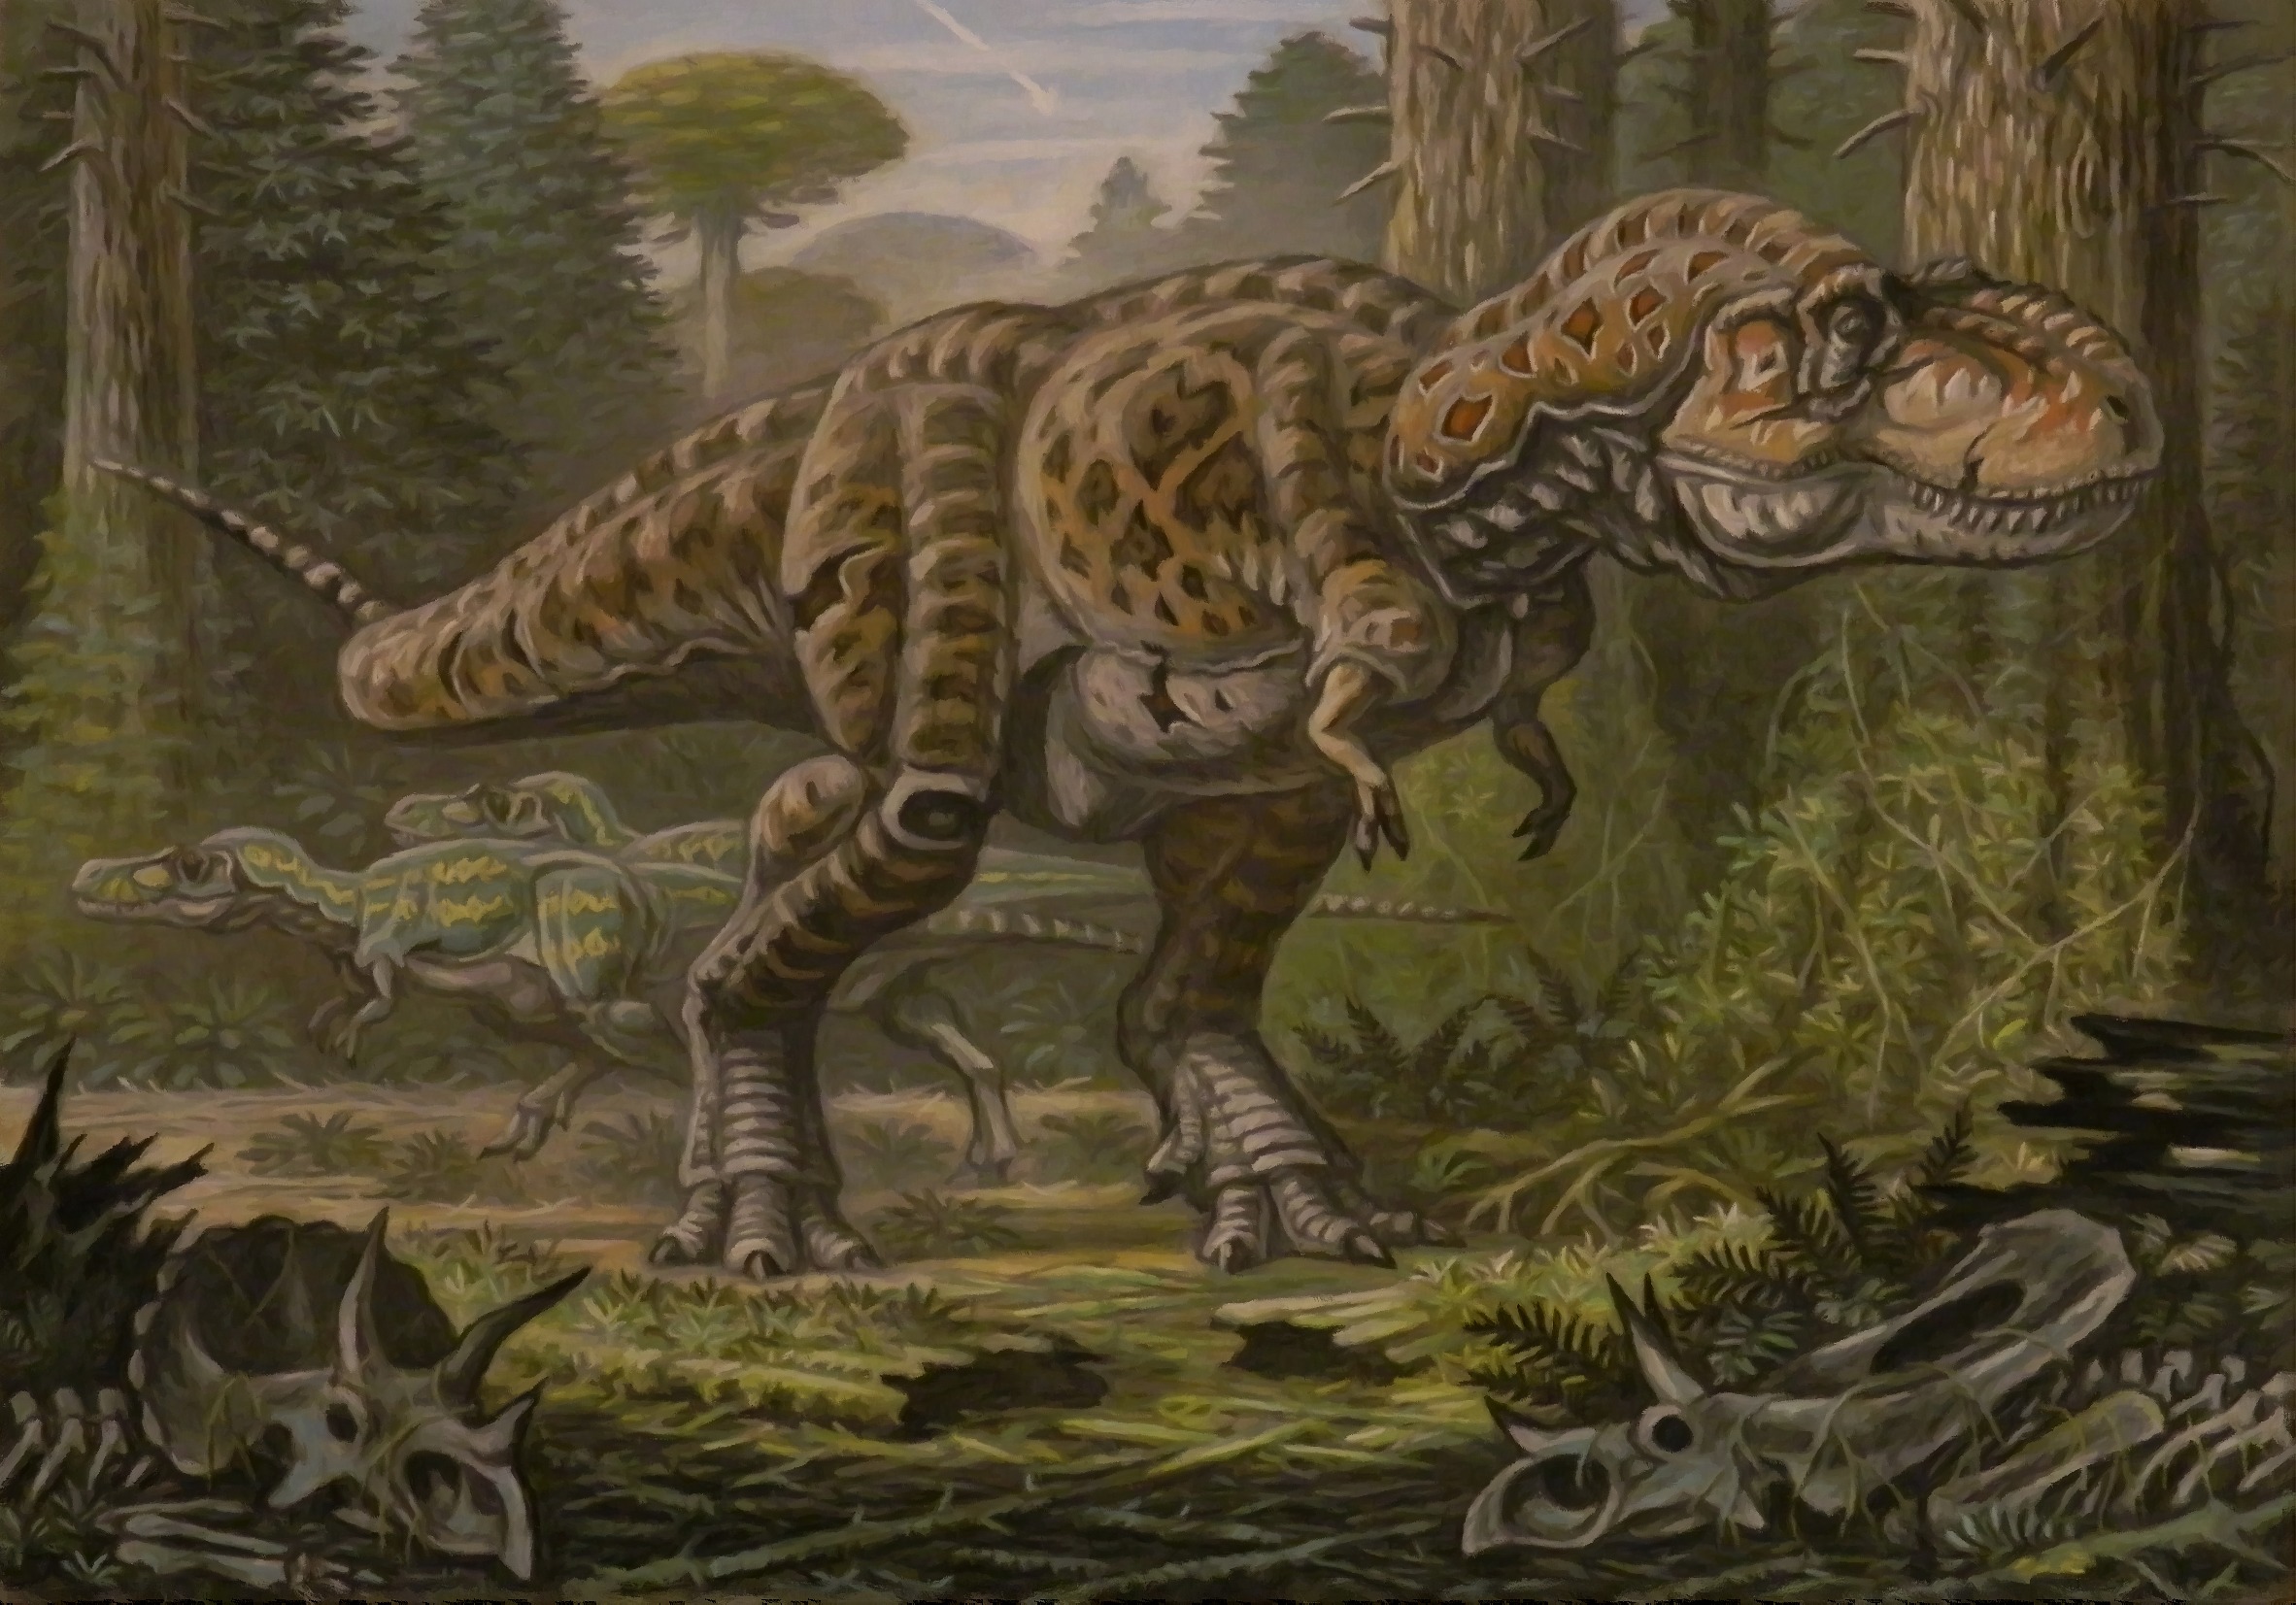 Tyrannosaurus - Wikipedia